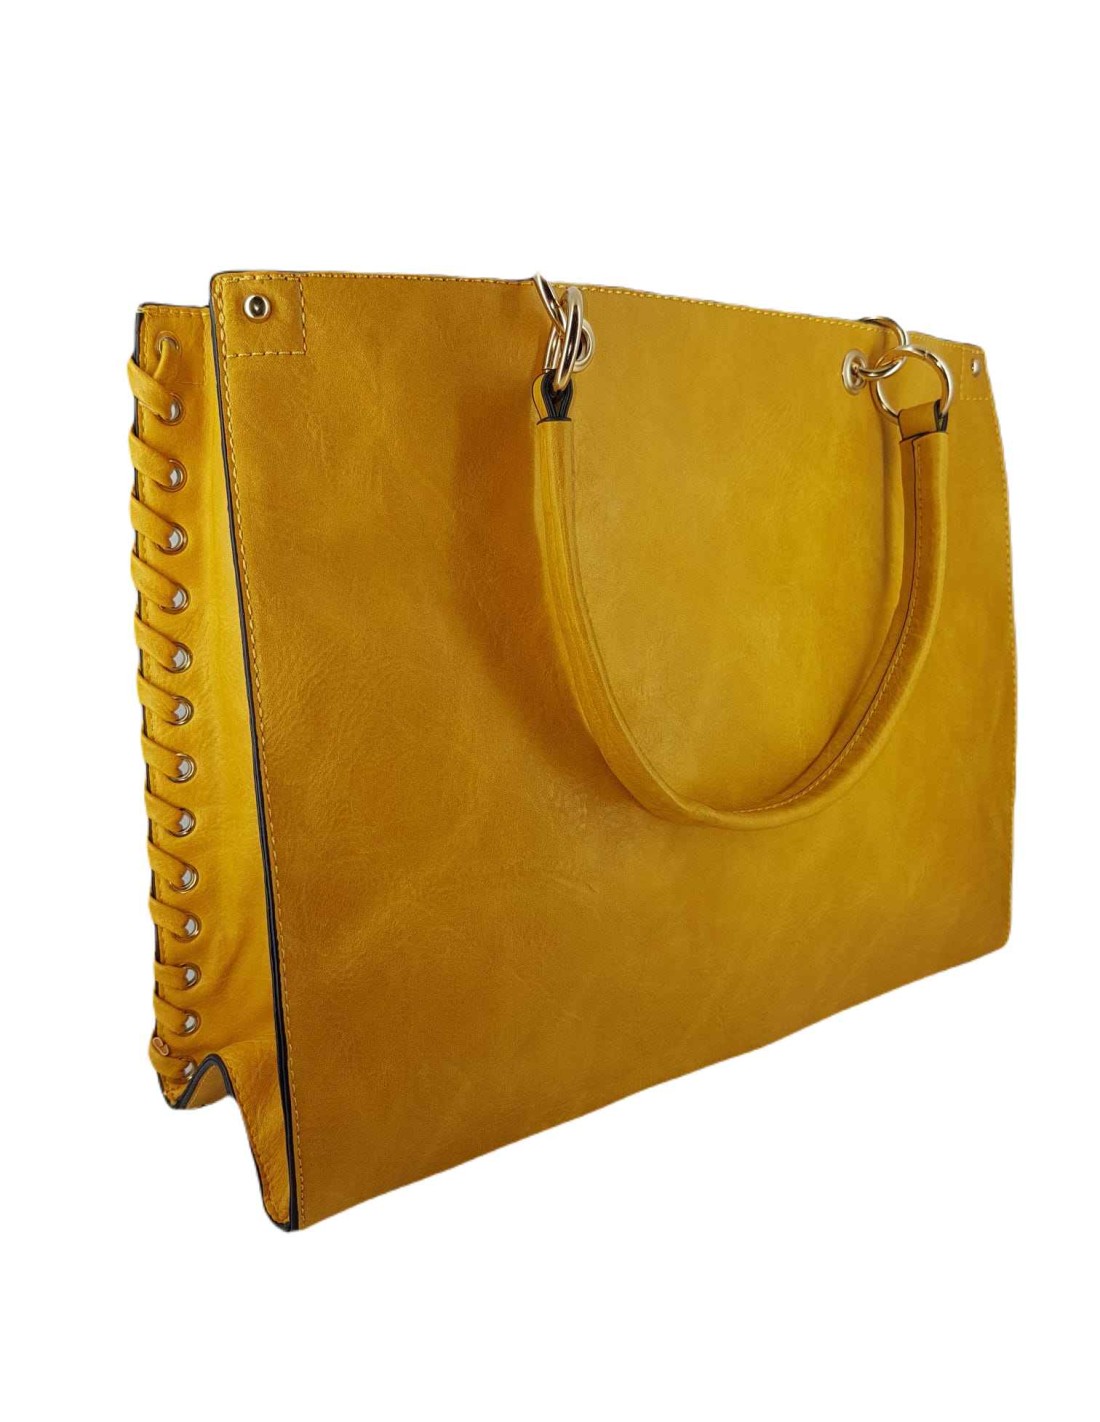 Bolso mujer shopping bag amarillo grande París